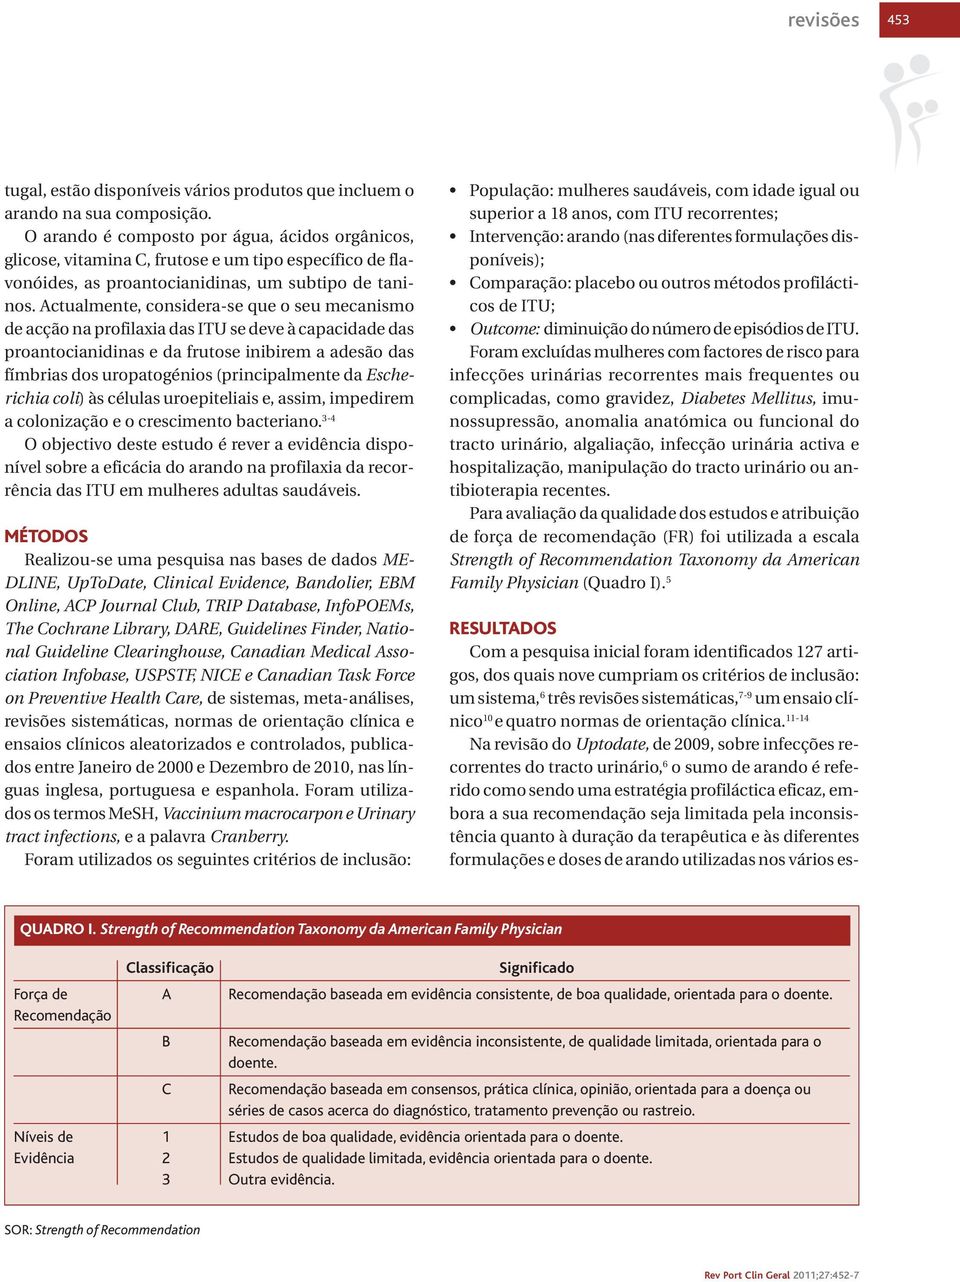 11-14 Na revisão do Uptodate, de 2009, sobre infecções recorrentes do tracto urinário, 6 o sumo de arando é referido como sendo uma estratégia profiláctica eficaz, embora a sua recomendação seja